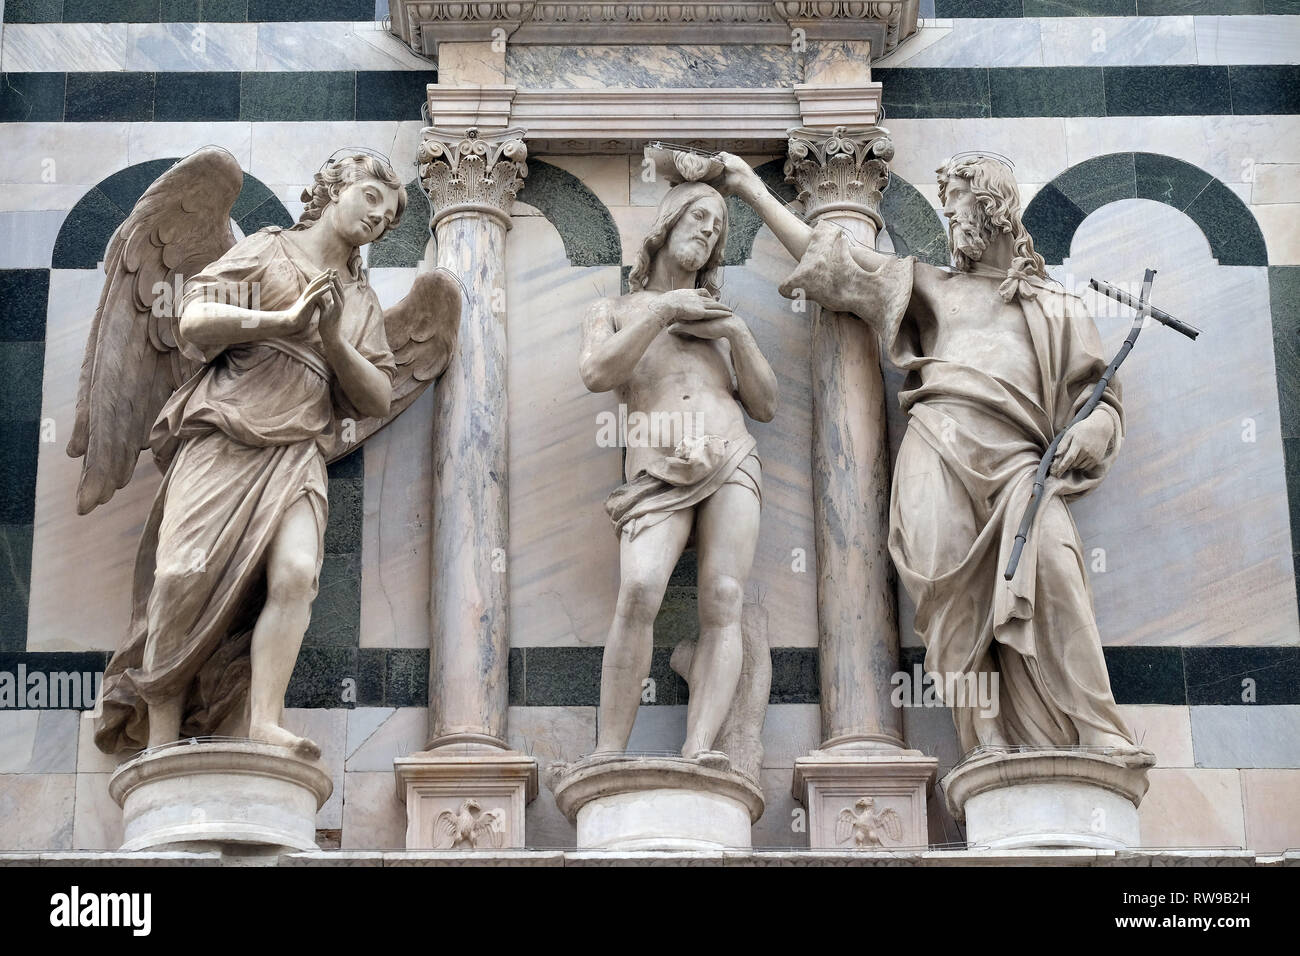 Le baptême de Jésus Christ, la cathédrale de Florence, le Baptistère de Saint-Jean, Florence, Italie Banque D'Images